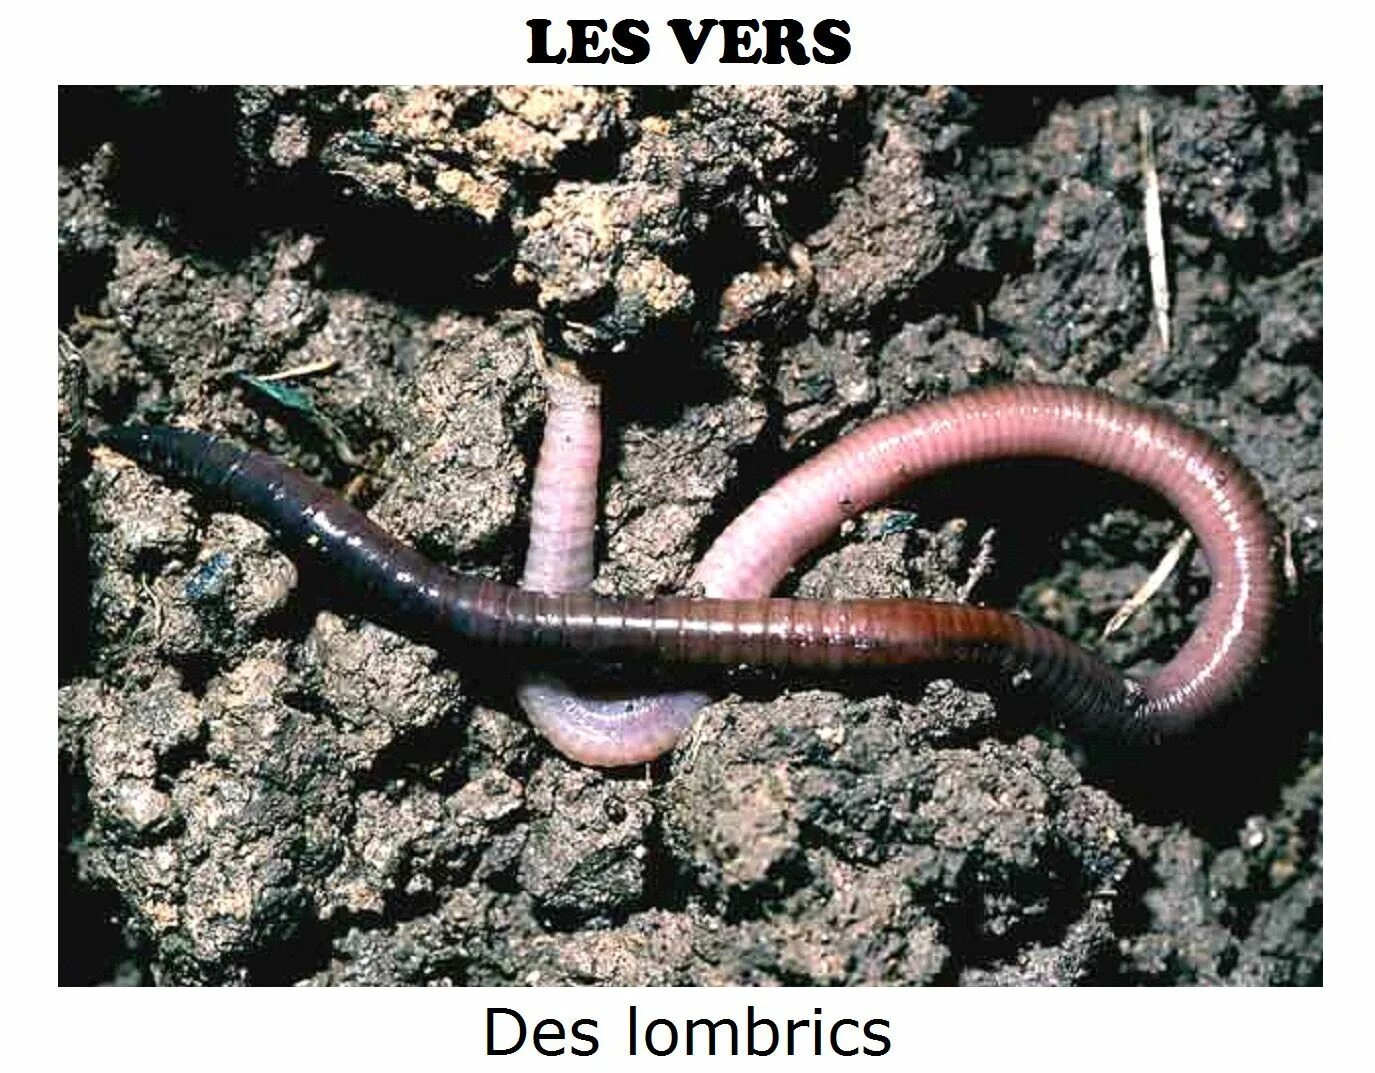 Малощетинковые дождевой червь. Червь Земляной (Lumbricus terrestris). Кольчатые черви олигохеты. Дождевые черви среда обитания. Дождевой червь беспозвоночные животные